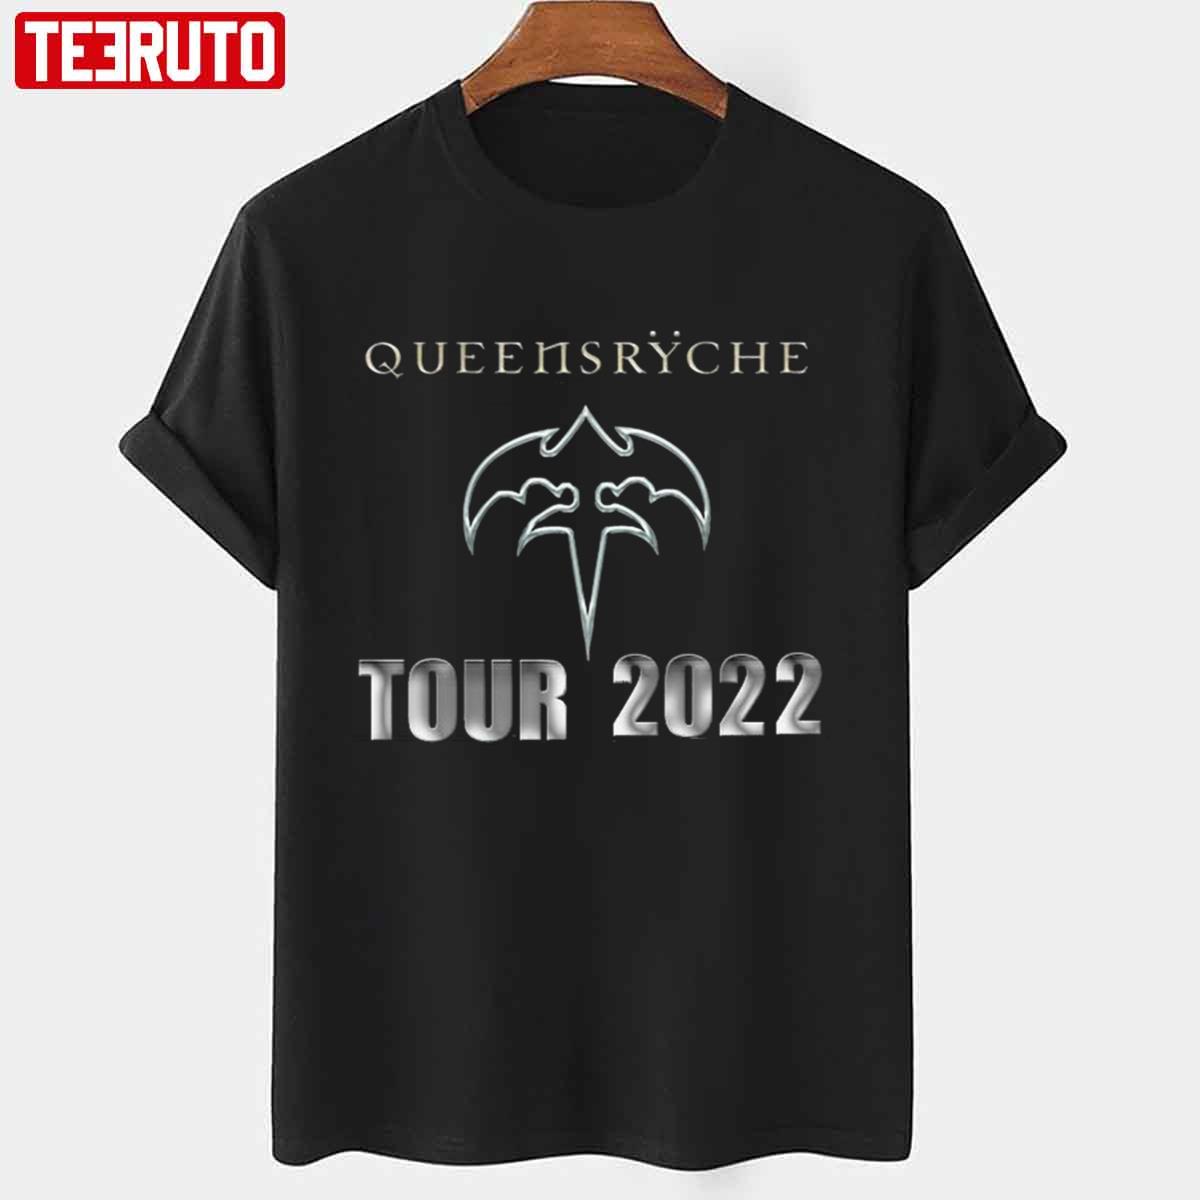 queensryche 2022 tour shirt